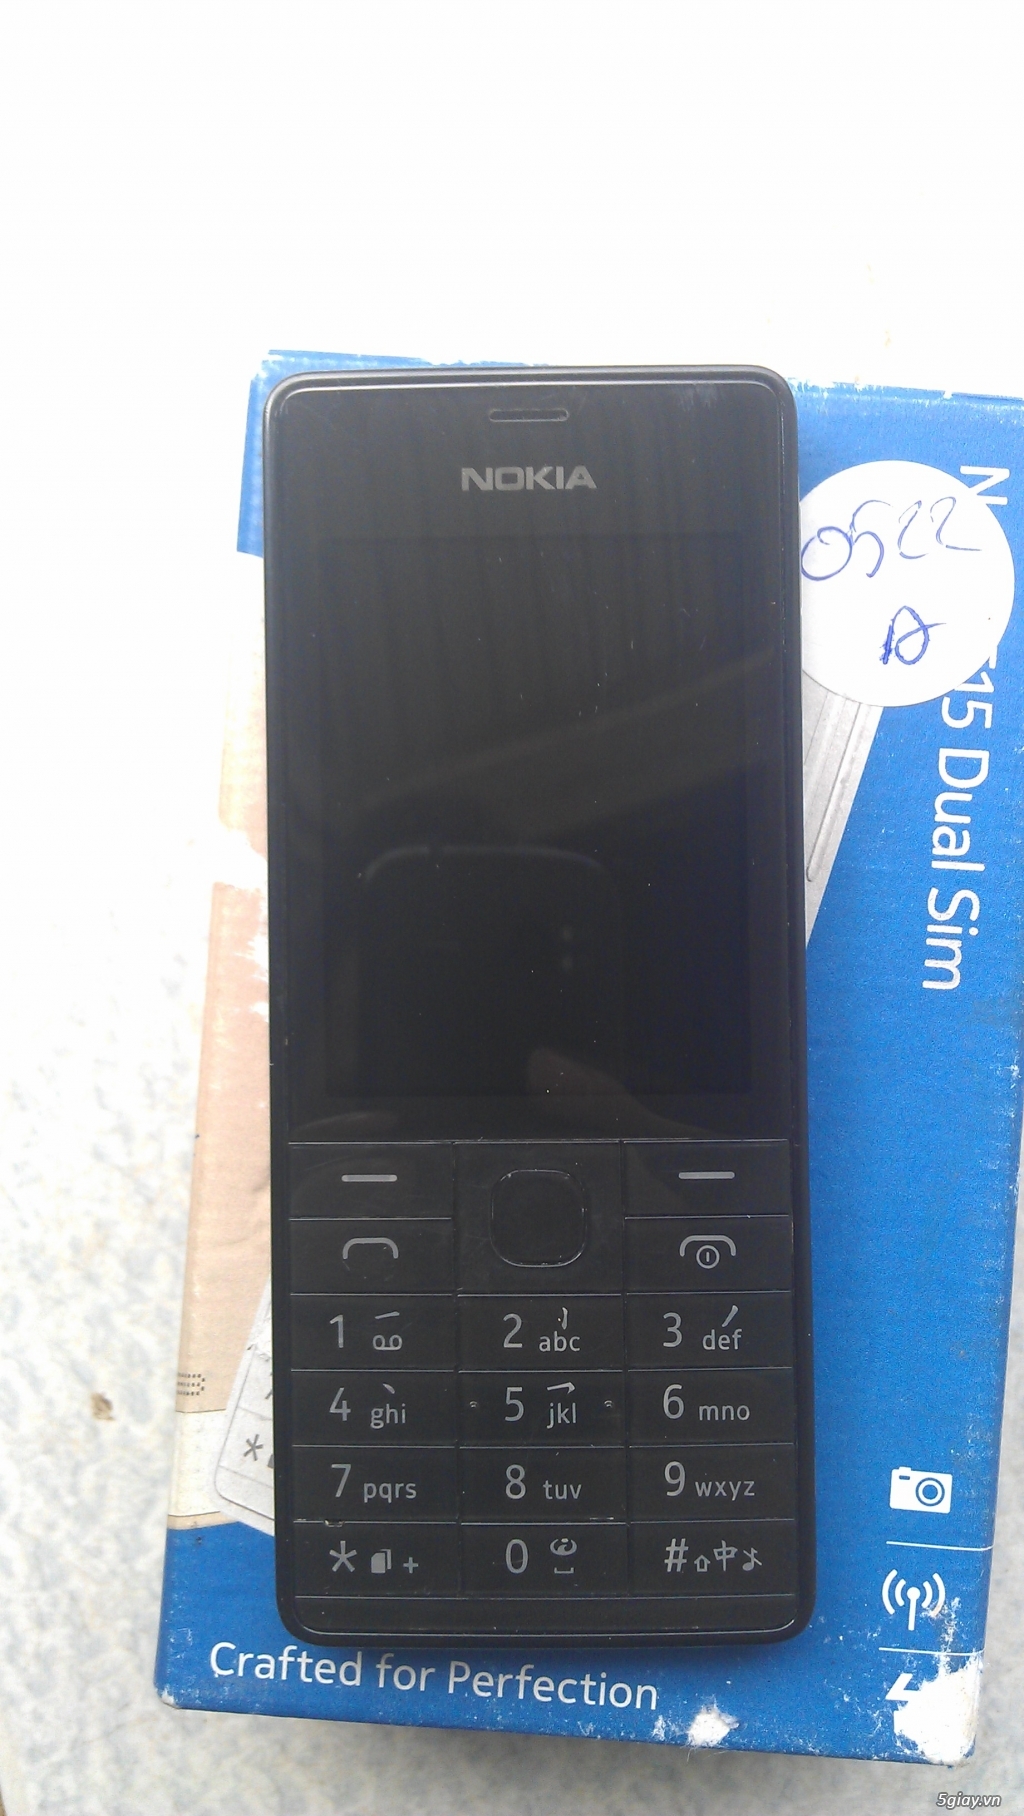 [ĐÔN GIÁ]Lên sàn Nokia 515 chính hãng còn bảo hành. End time 23h59p ngày 18/05/2016